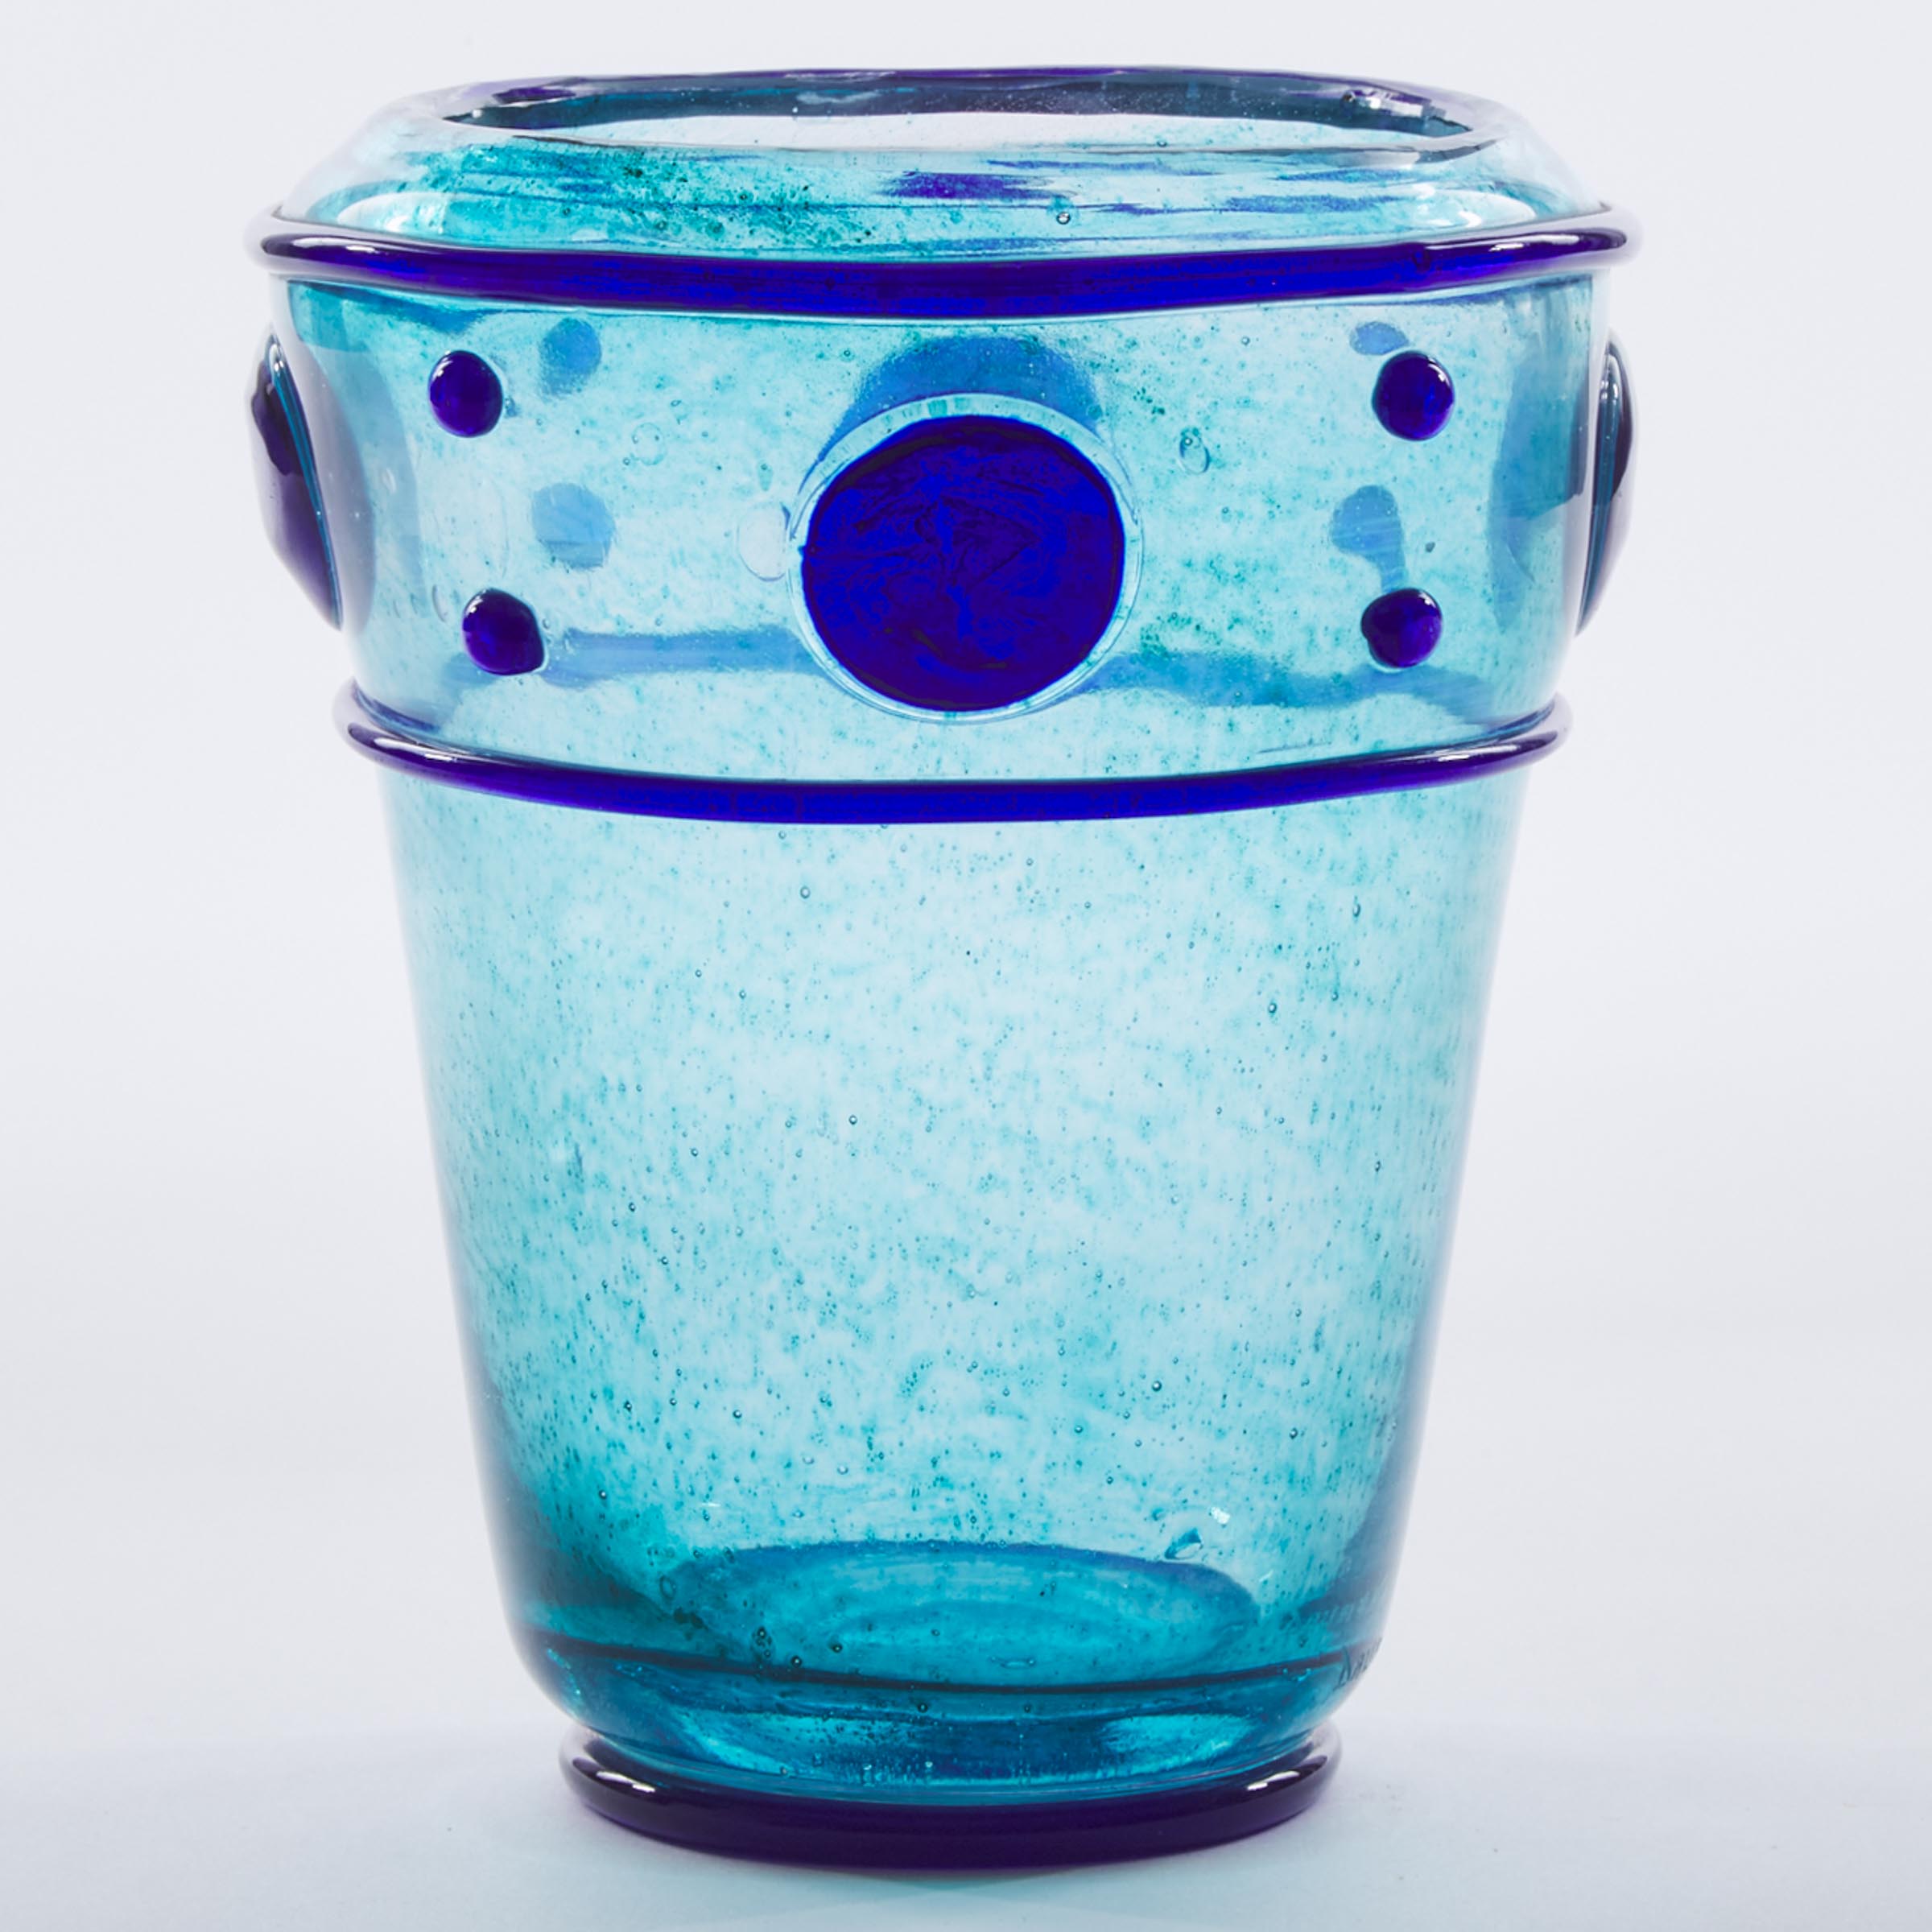 Daum Cobalt Glass Vase 20th century 3aba6f